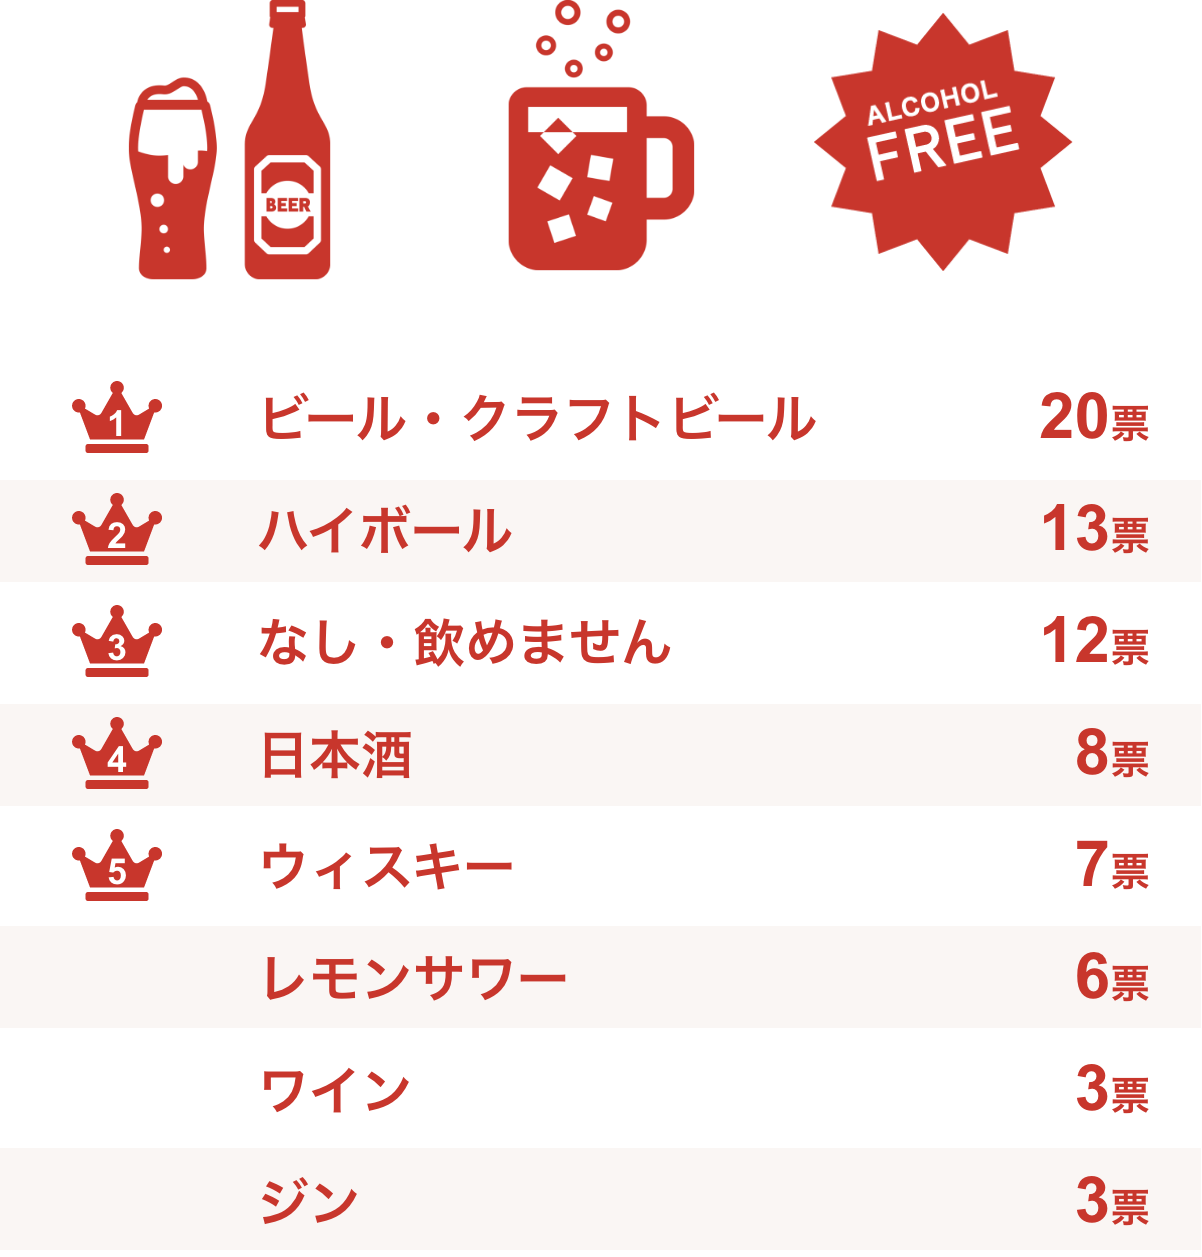 1位 ビール・クラフトビール 20票、2位 ハイボール 13票、3位 なし・飲めません 12票、4位 日本酒 8票、5位 ウィスキー・レモンサワー・ワイン・ジン 3票、